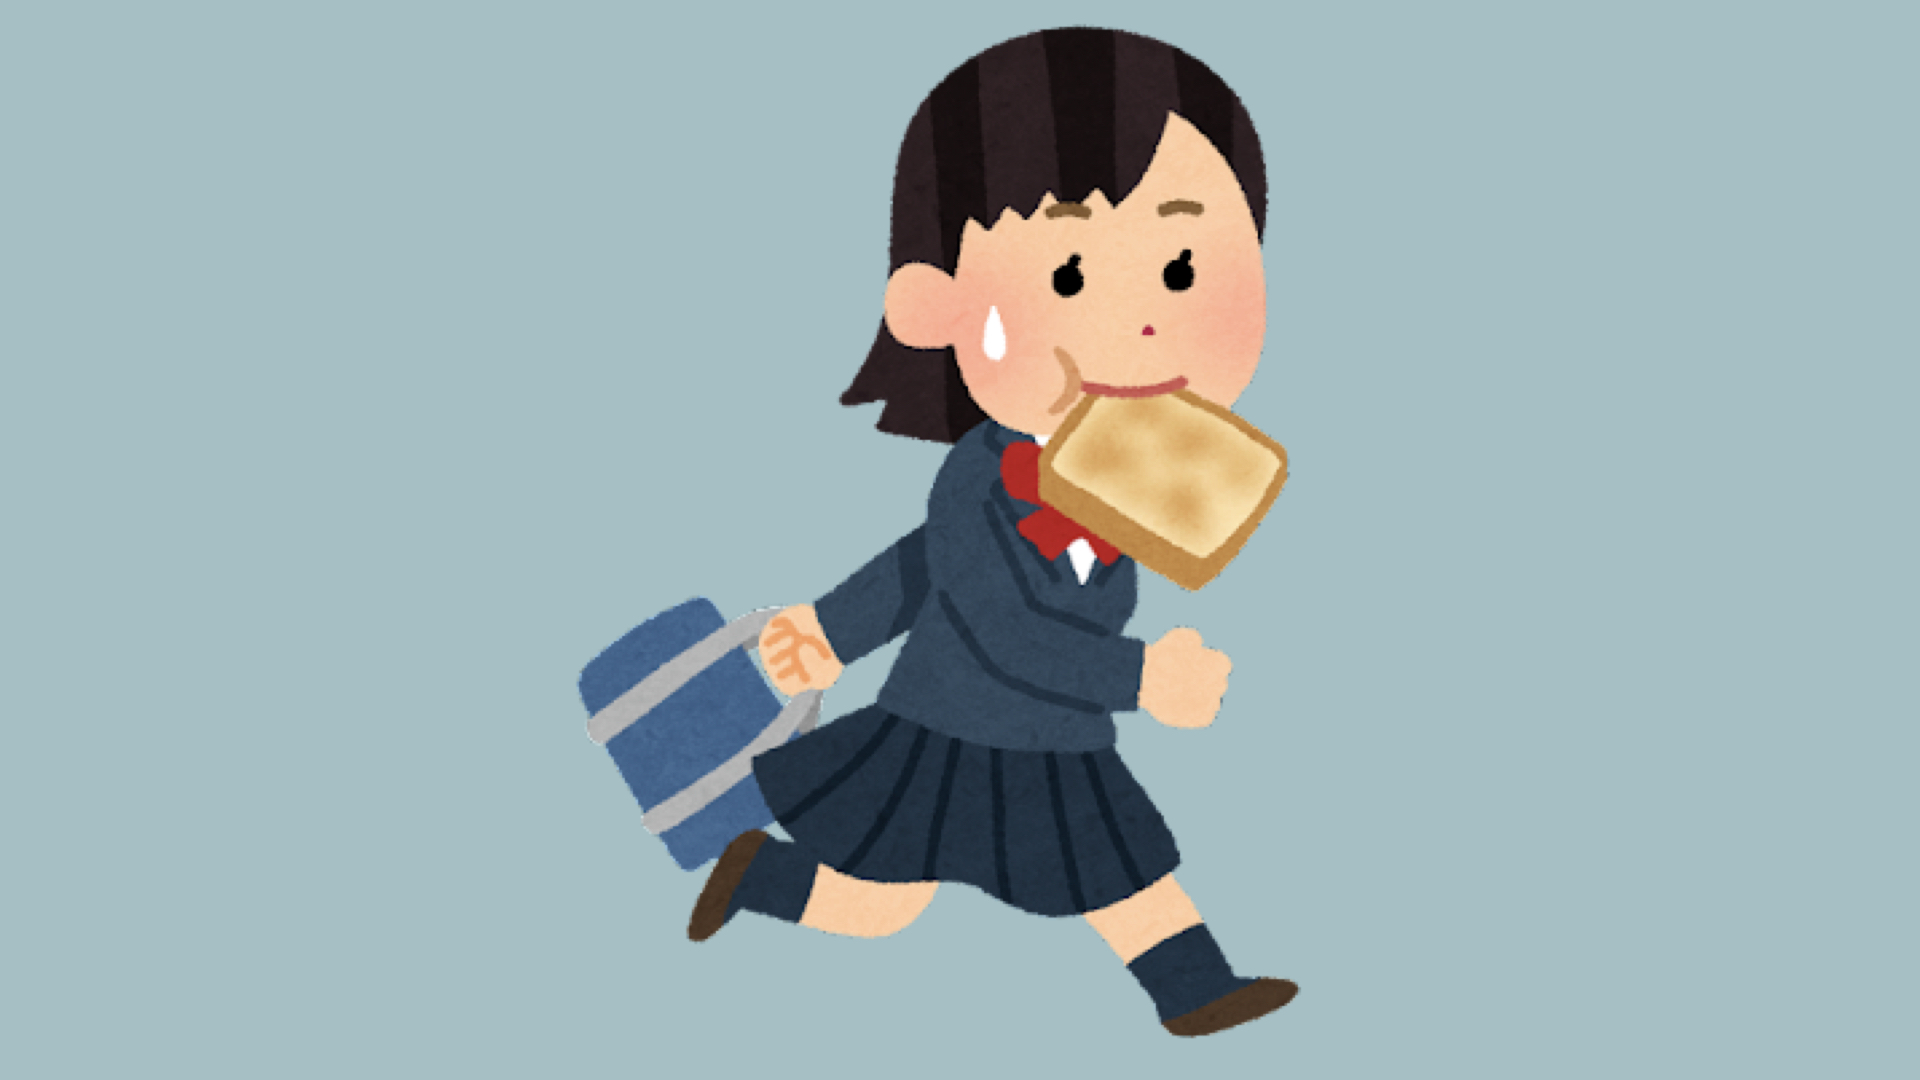 Ein Teil der japanischen Manga-Kultur: Die verspätete Schülerin mit dem Brot im Mund.